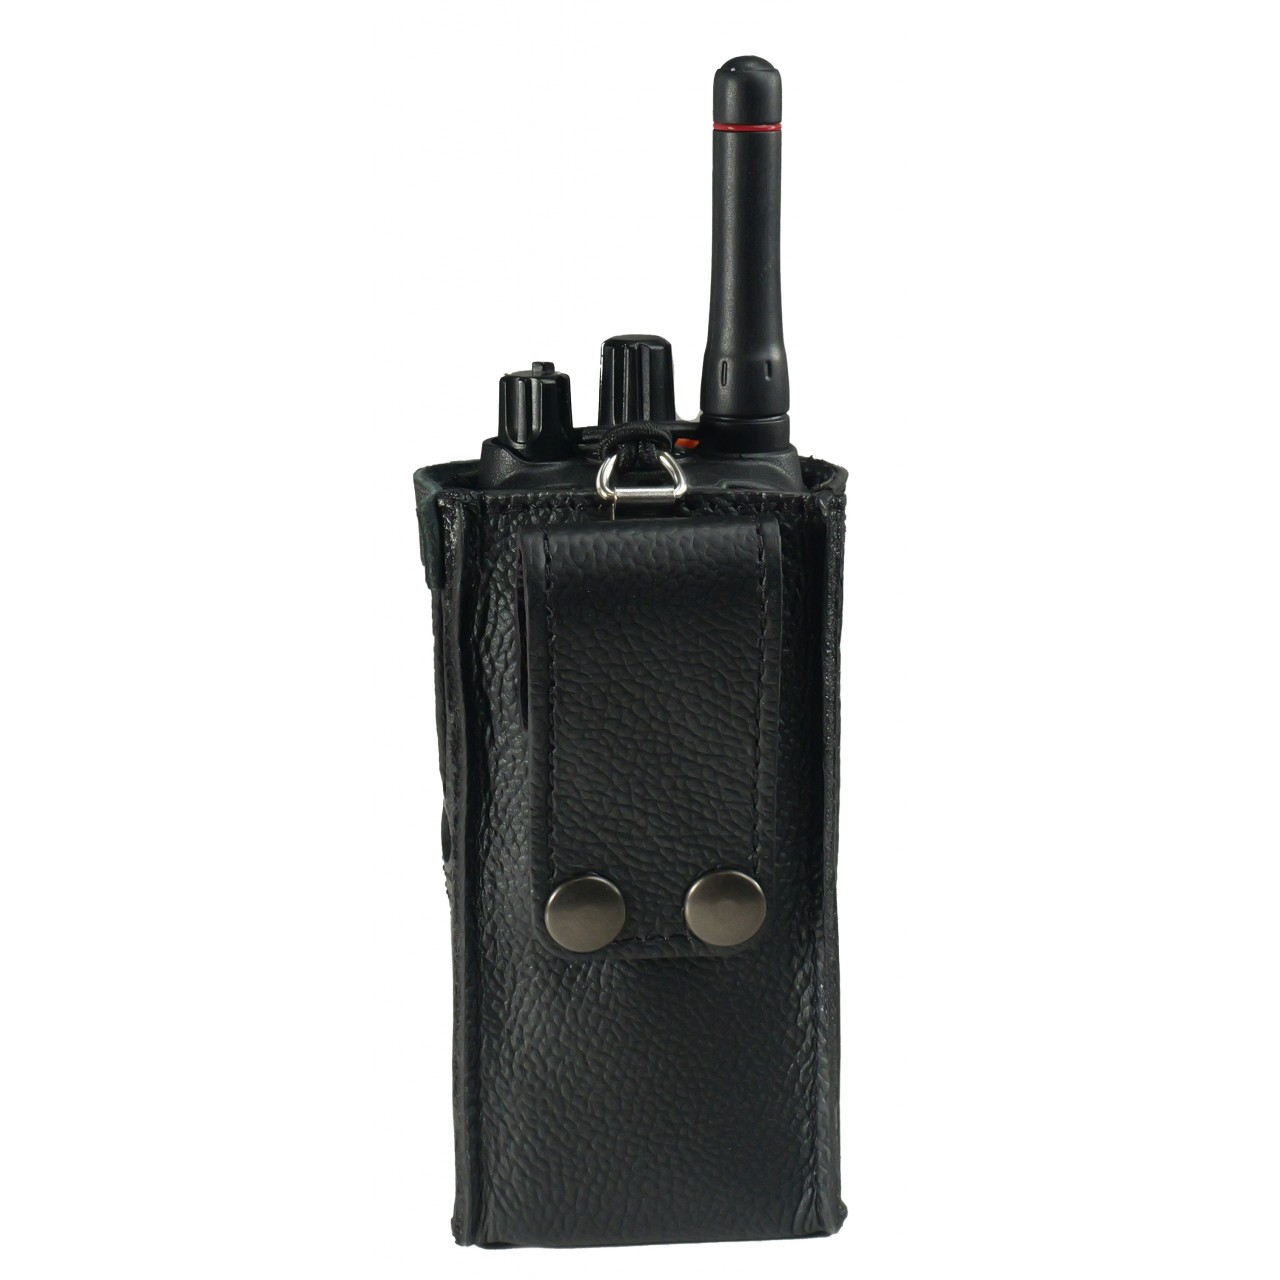 Housse en cuir avec passant ceinture pour portatif LTE hybride série IP730D. Photo avec le portatif.